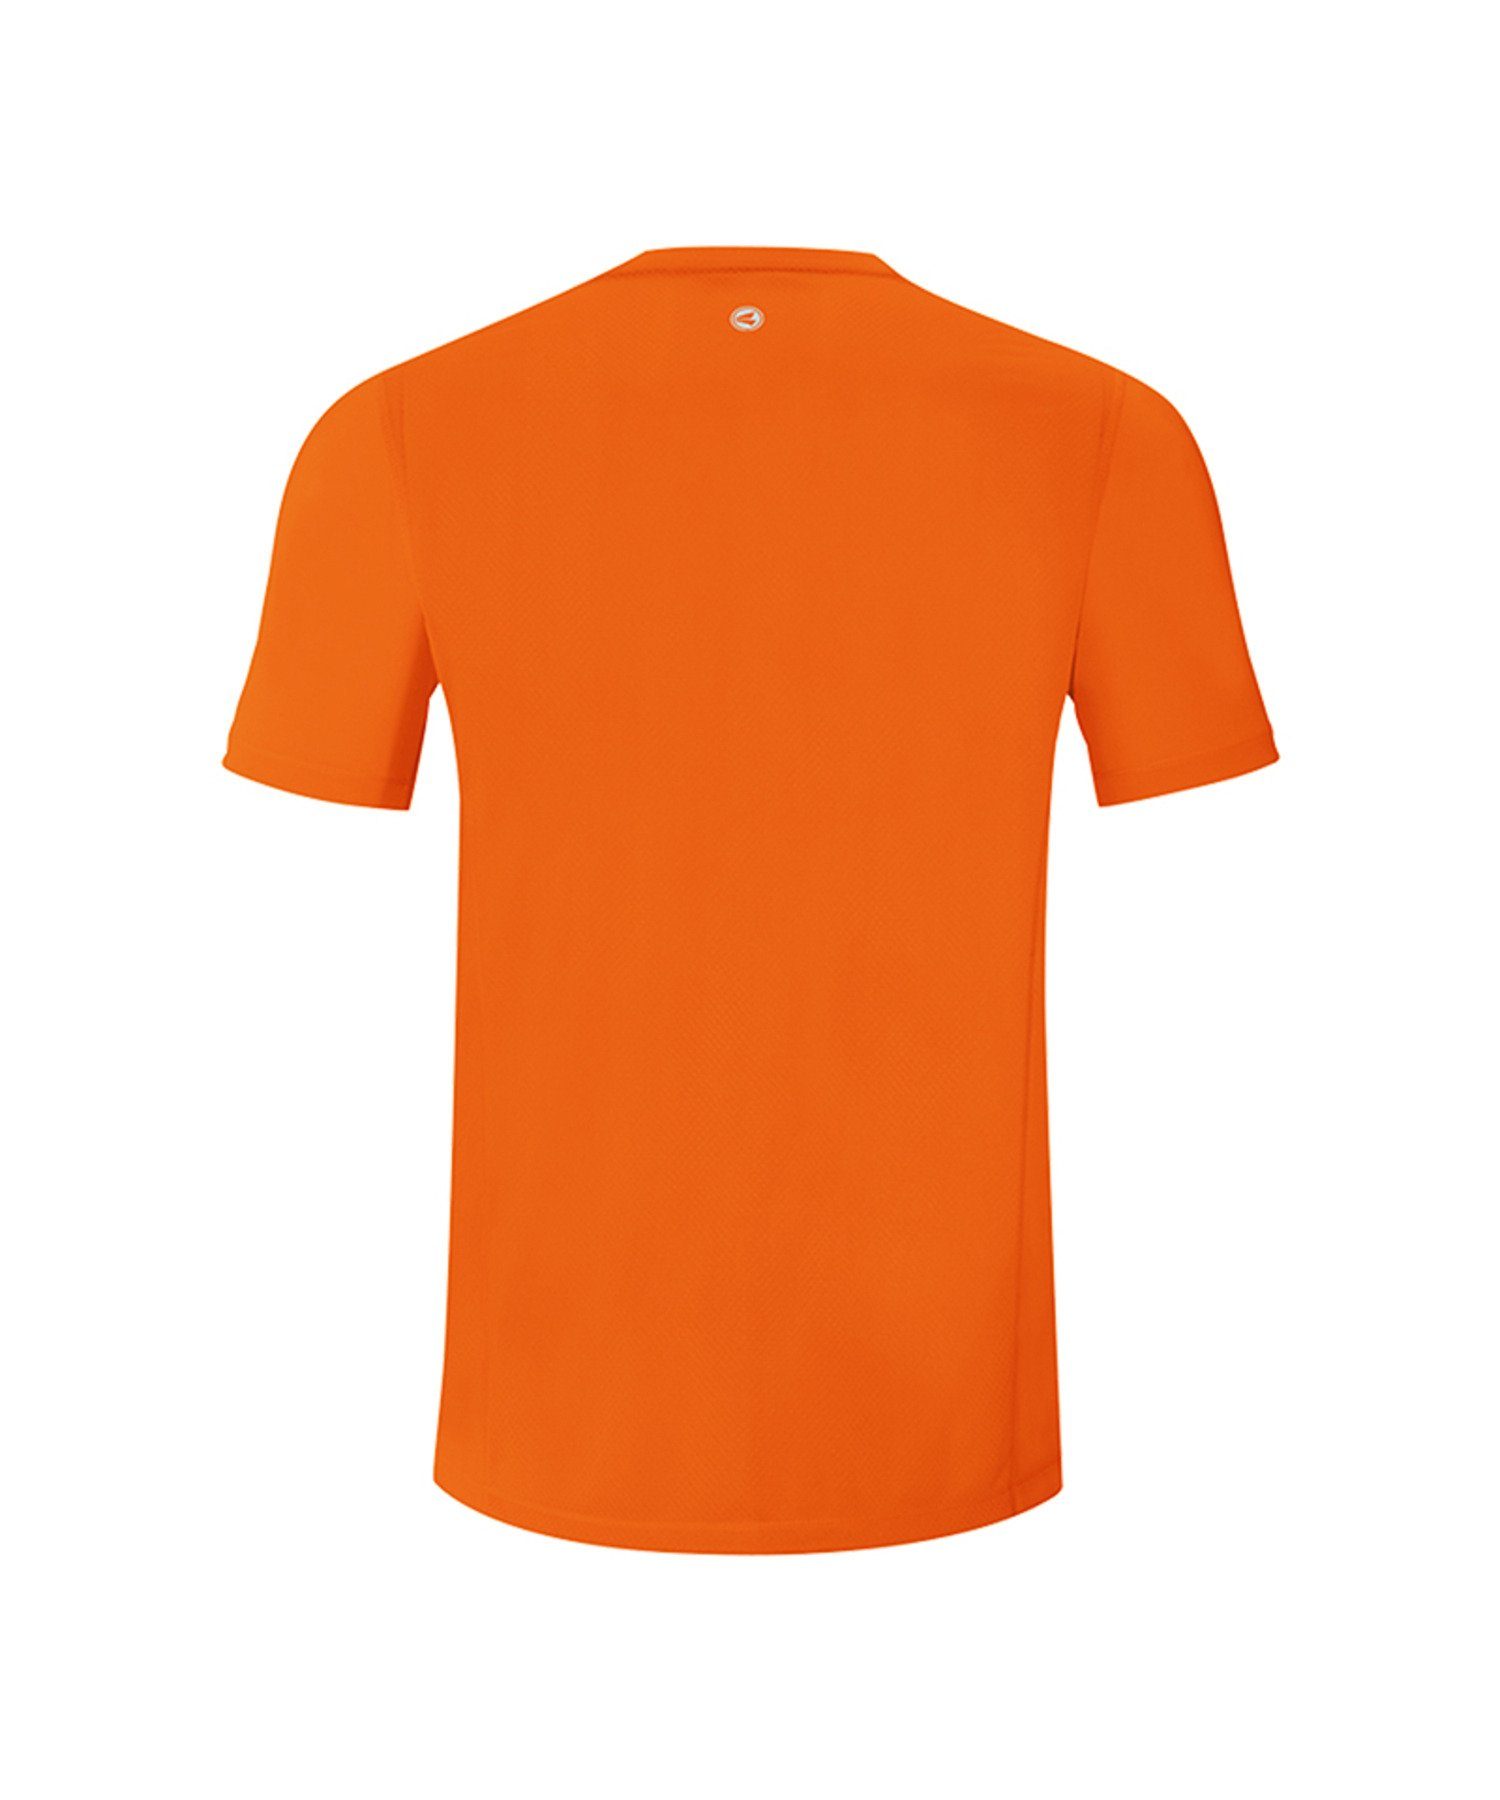 Jako Laufshirt Run Kids T-Shirt default Running 2.0 Orange